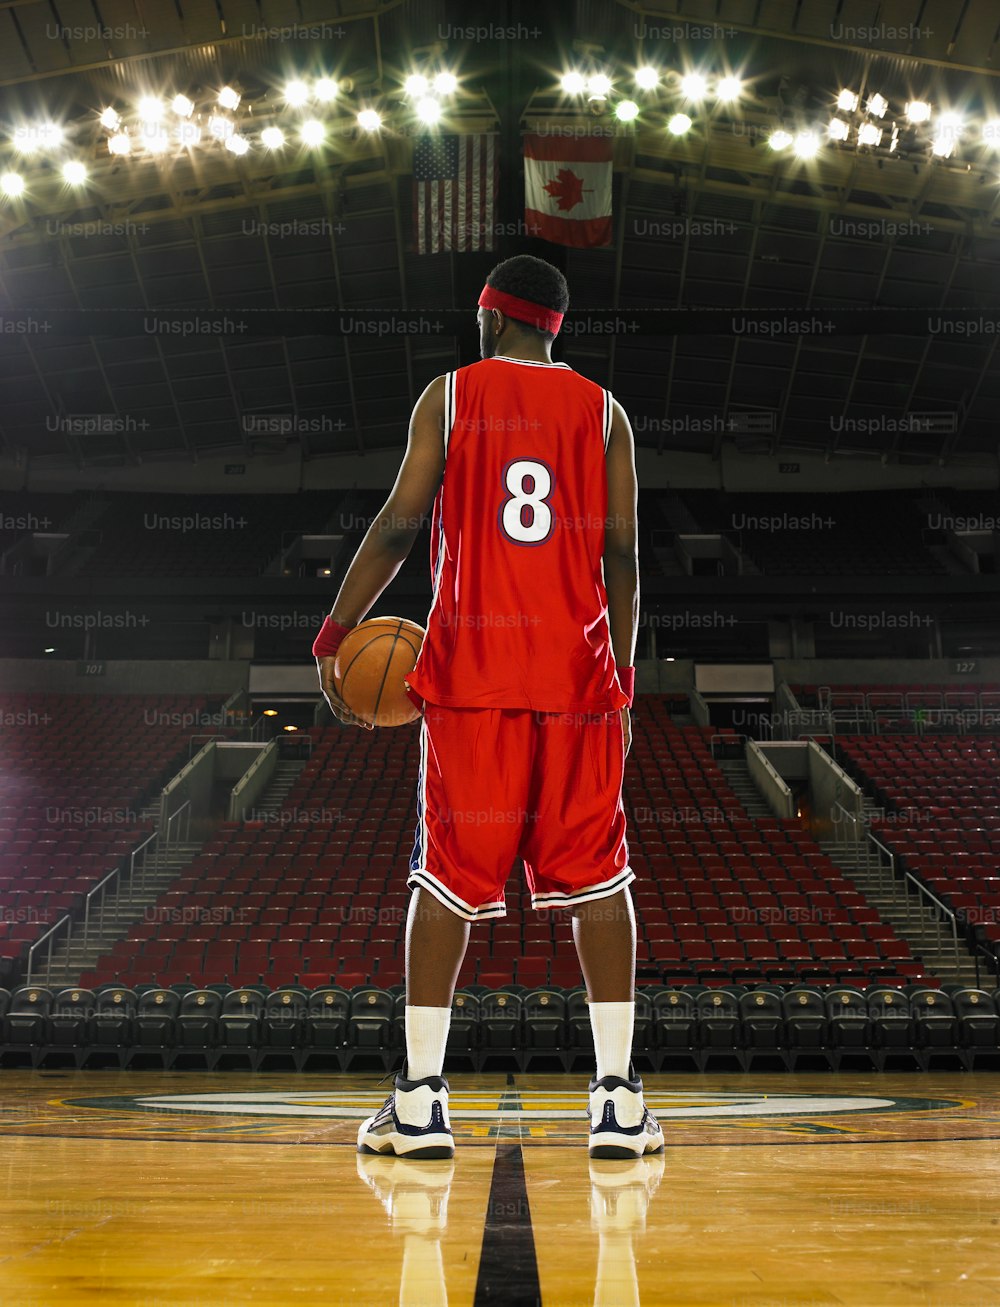 un joueur de basket-ball en uniforme rouge tenant un ballon de basket-ball